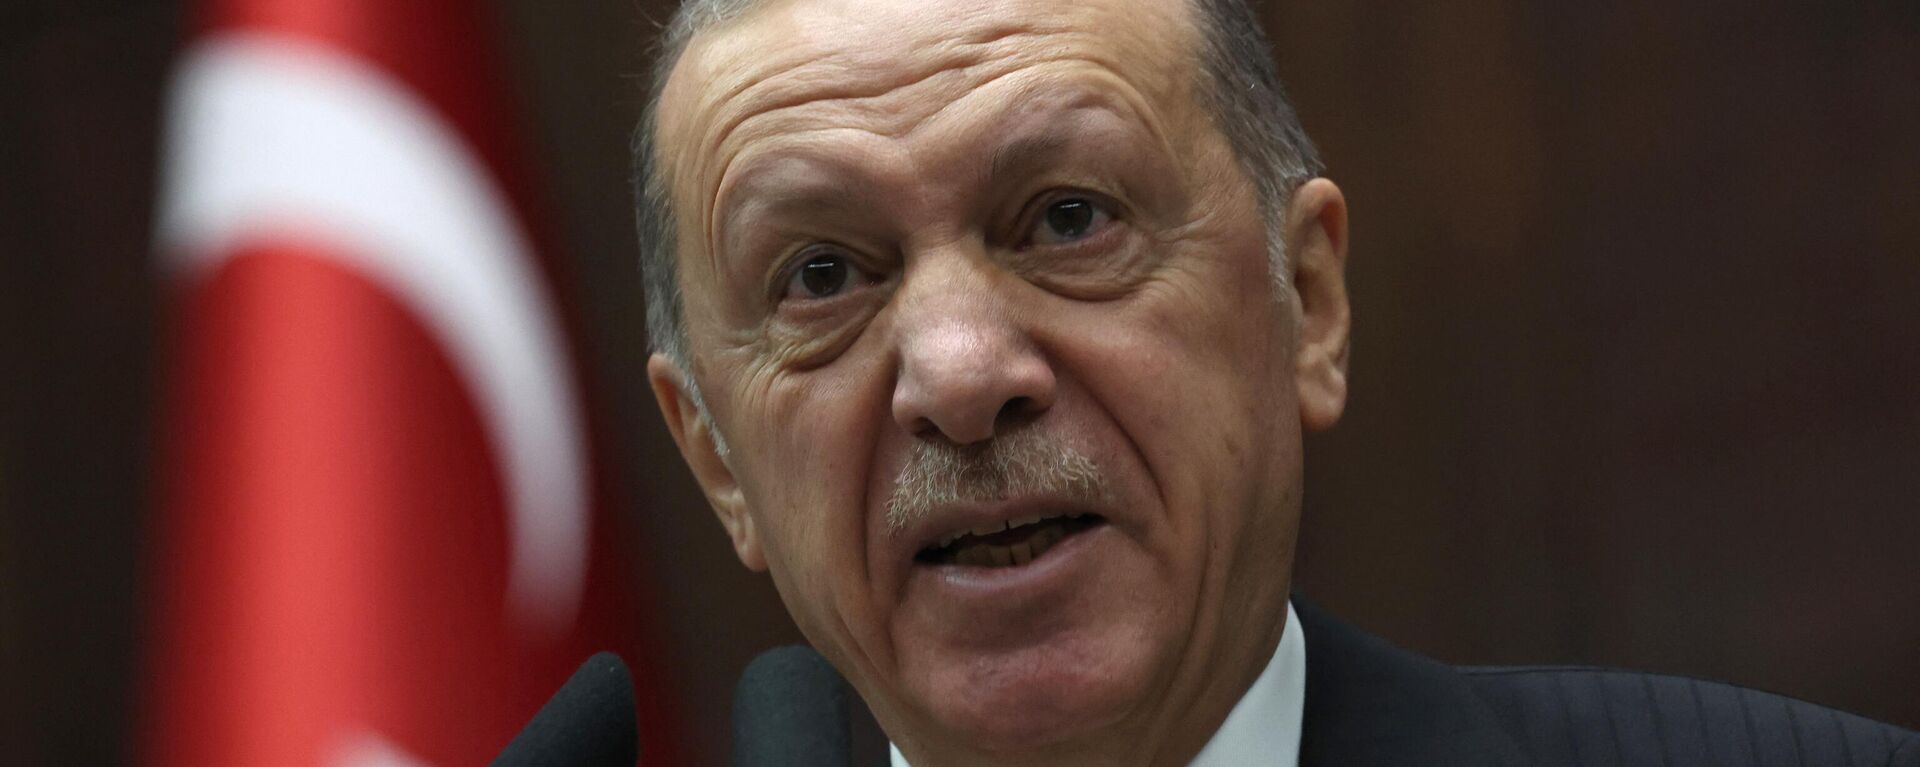 Recep Tayyip Erdogan, el mandatario de Turquía - Sputnik Mundo, 1920, 13.12.2022